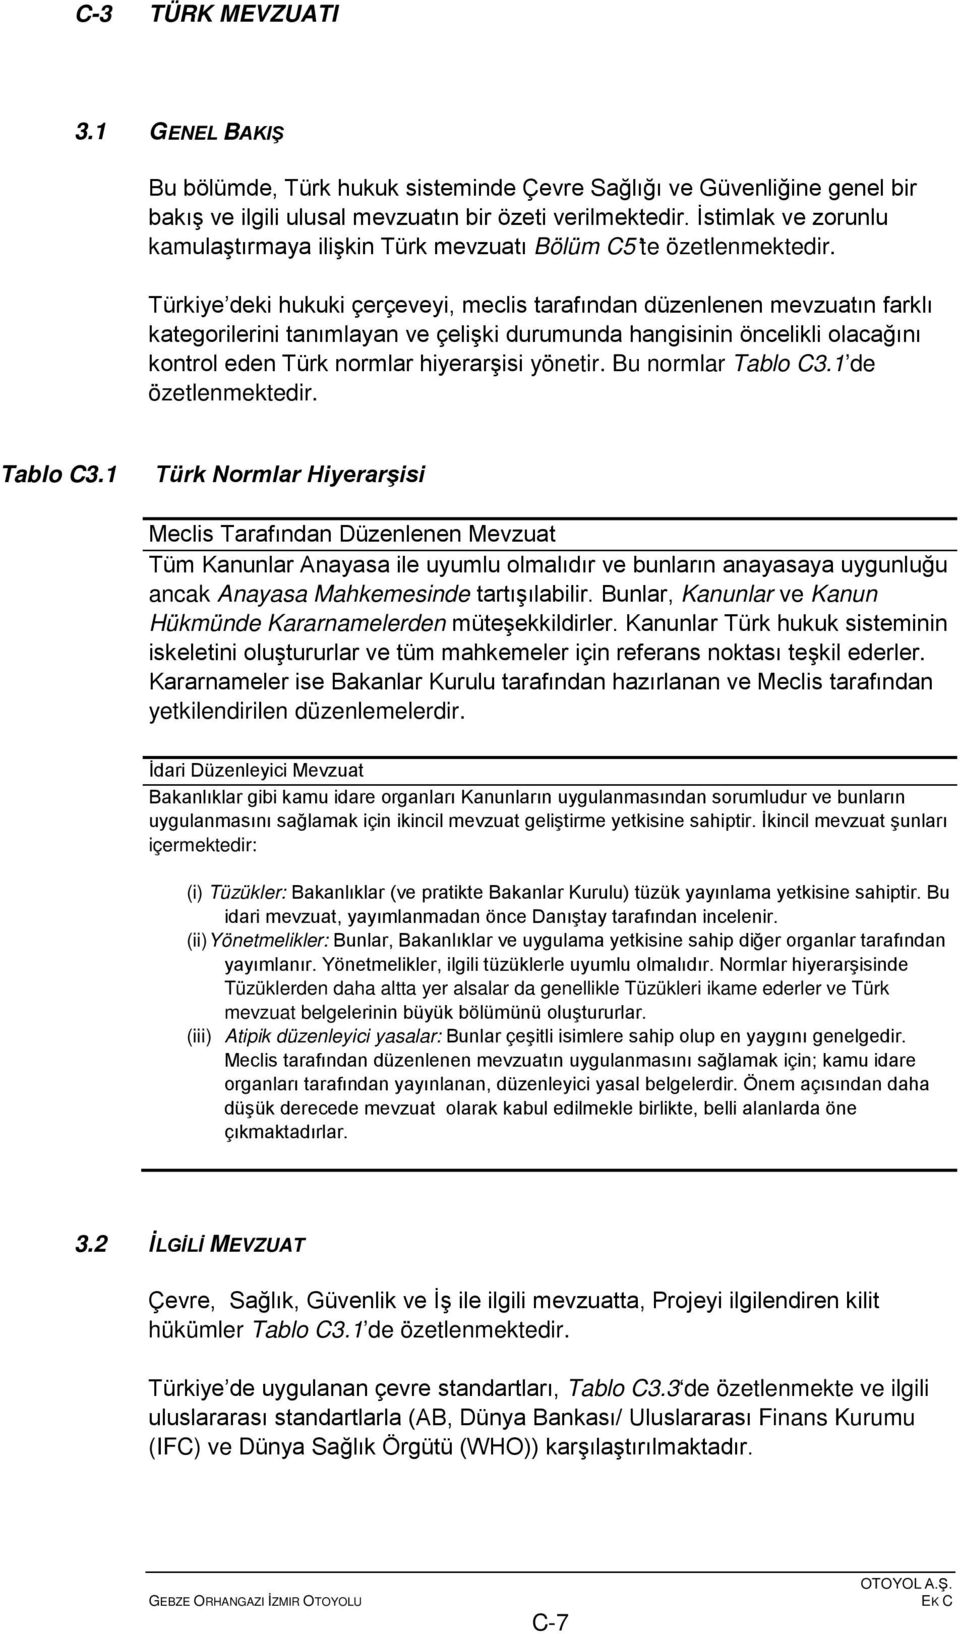 Türkiye deki hukuki çerçeveyi, meclis tarafından düzenlenen mevzuatın farklı kategorilerini tanımlayan ve çelişki durumunda hangisinin öncelikli olacağını kontrol eden Türk normlar hiyerarşisi